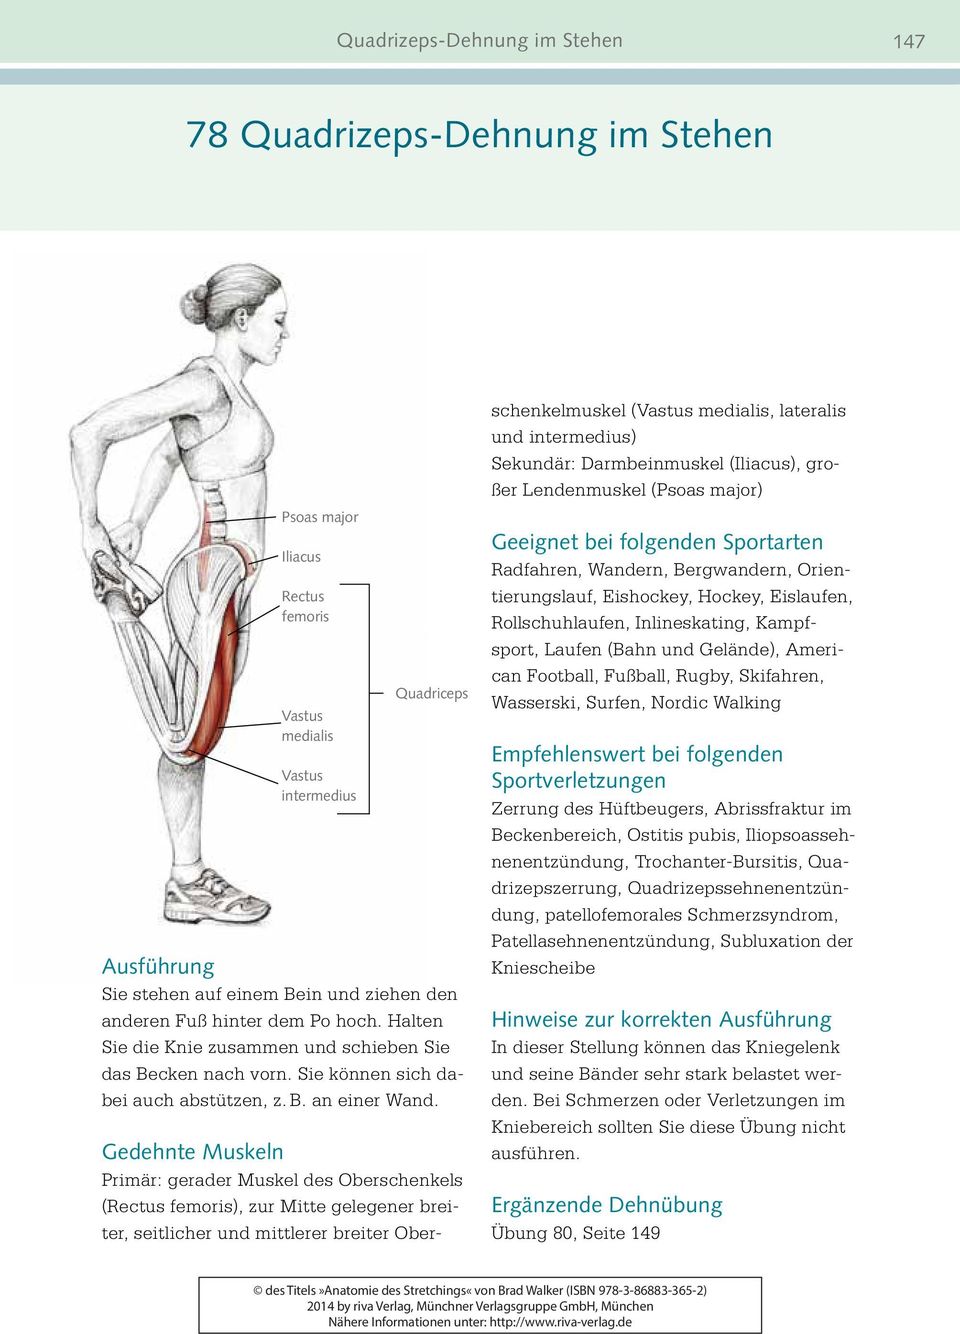 Gedehnte Muskeln Primär: gerader Muskel des Oberschenkels (Rectus femoris), zur Mitte gelegener breiter, seitlicher und mittlerer breiter Oberschenkelmuskel (Vastus medialis, lateralis und